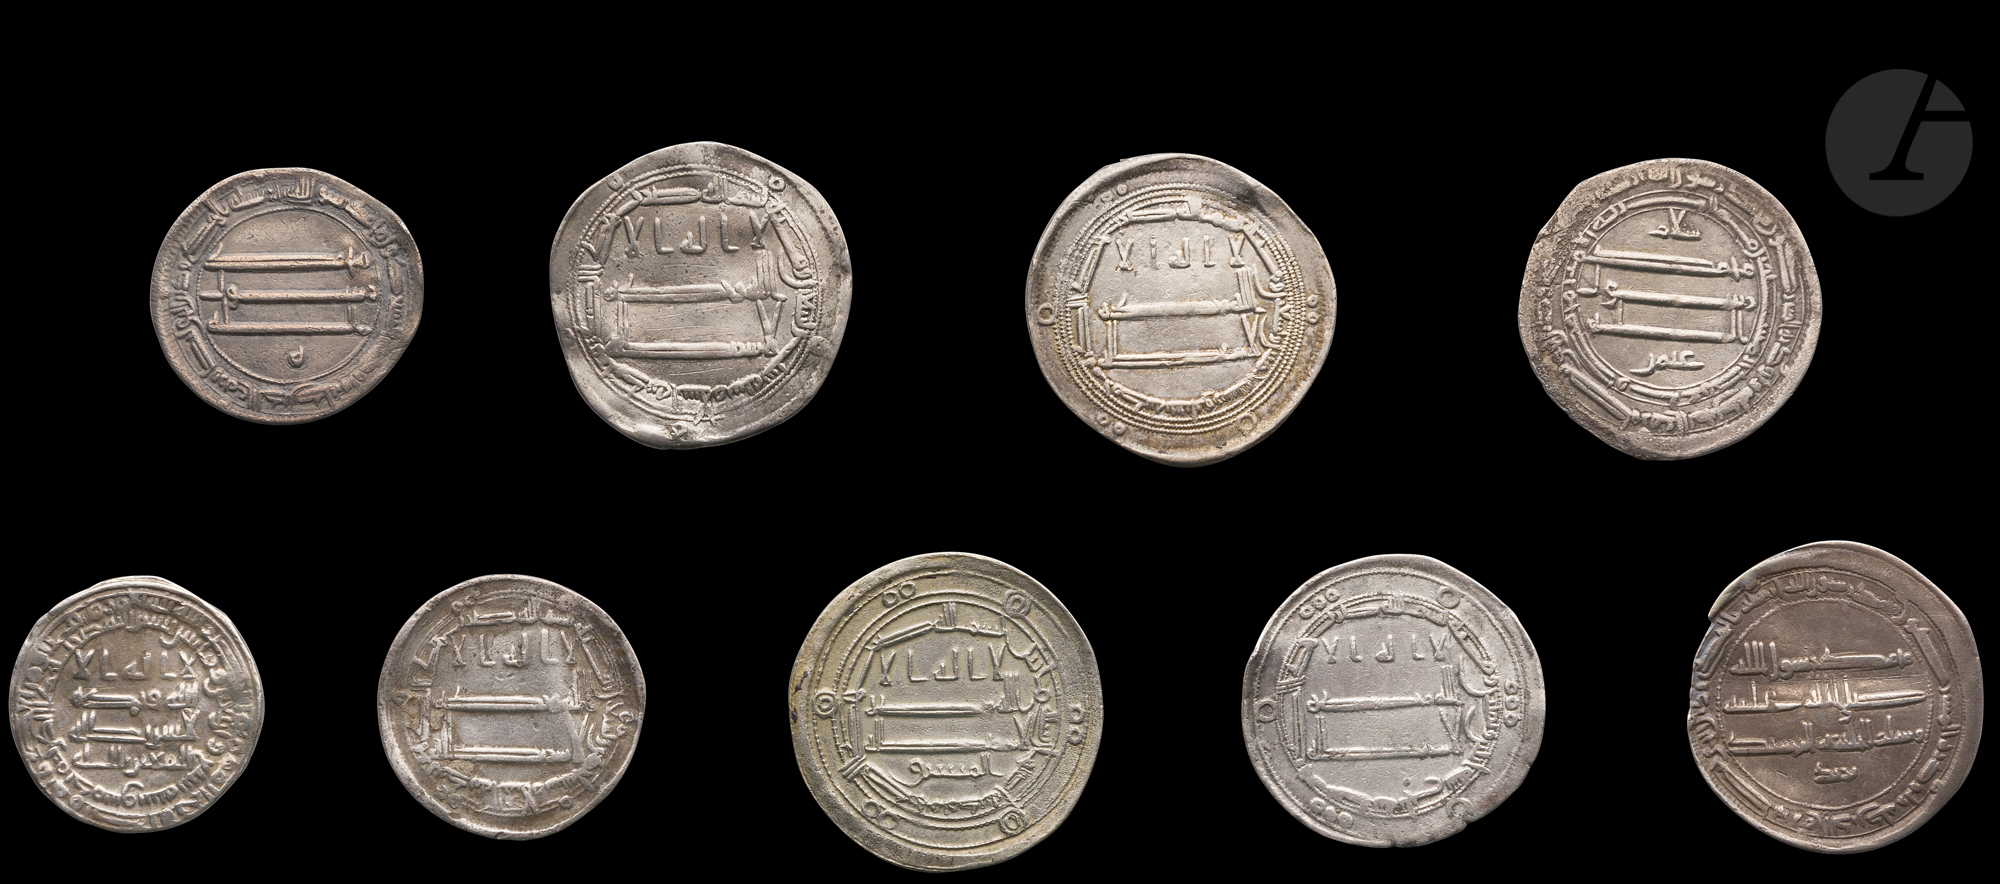 ABBASSIDES Un rare dirham d'argent daté 247 H / 861 et frappé à Dimashq (Damas), règne d'al- - Image 2 of 2